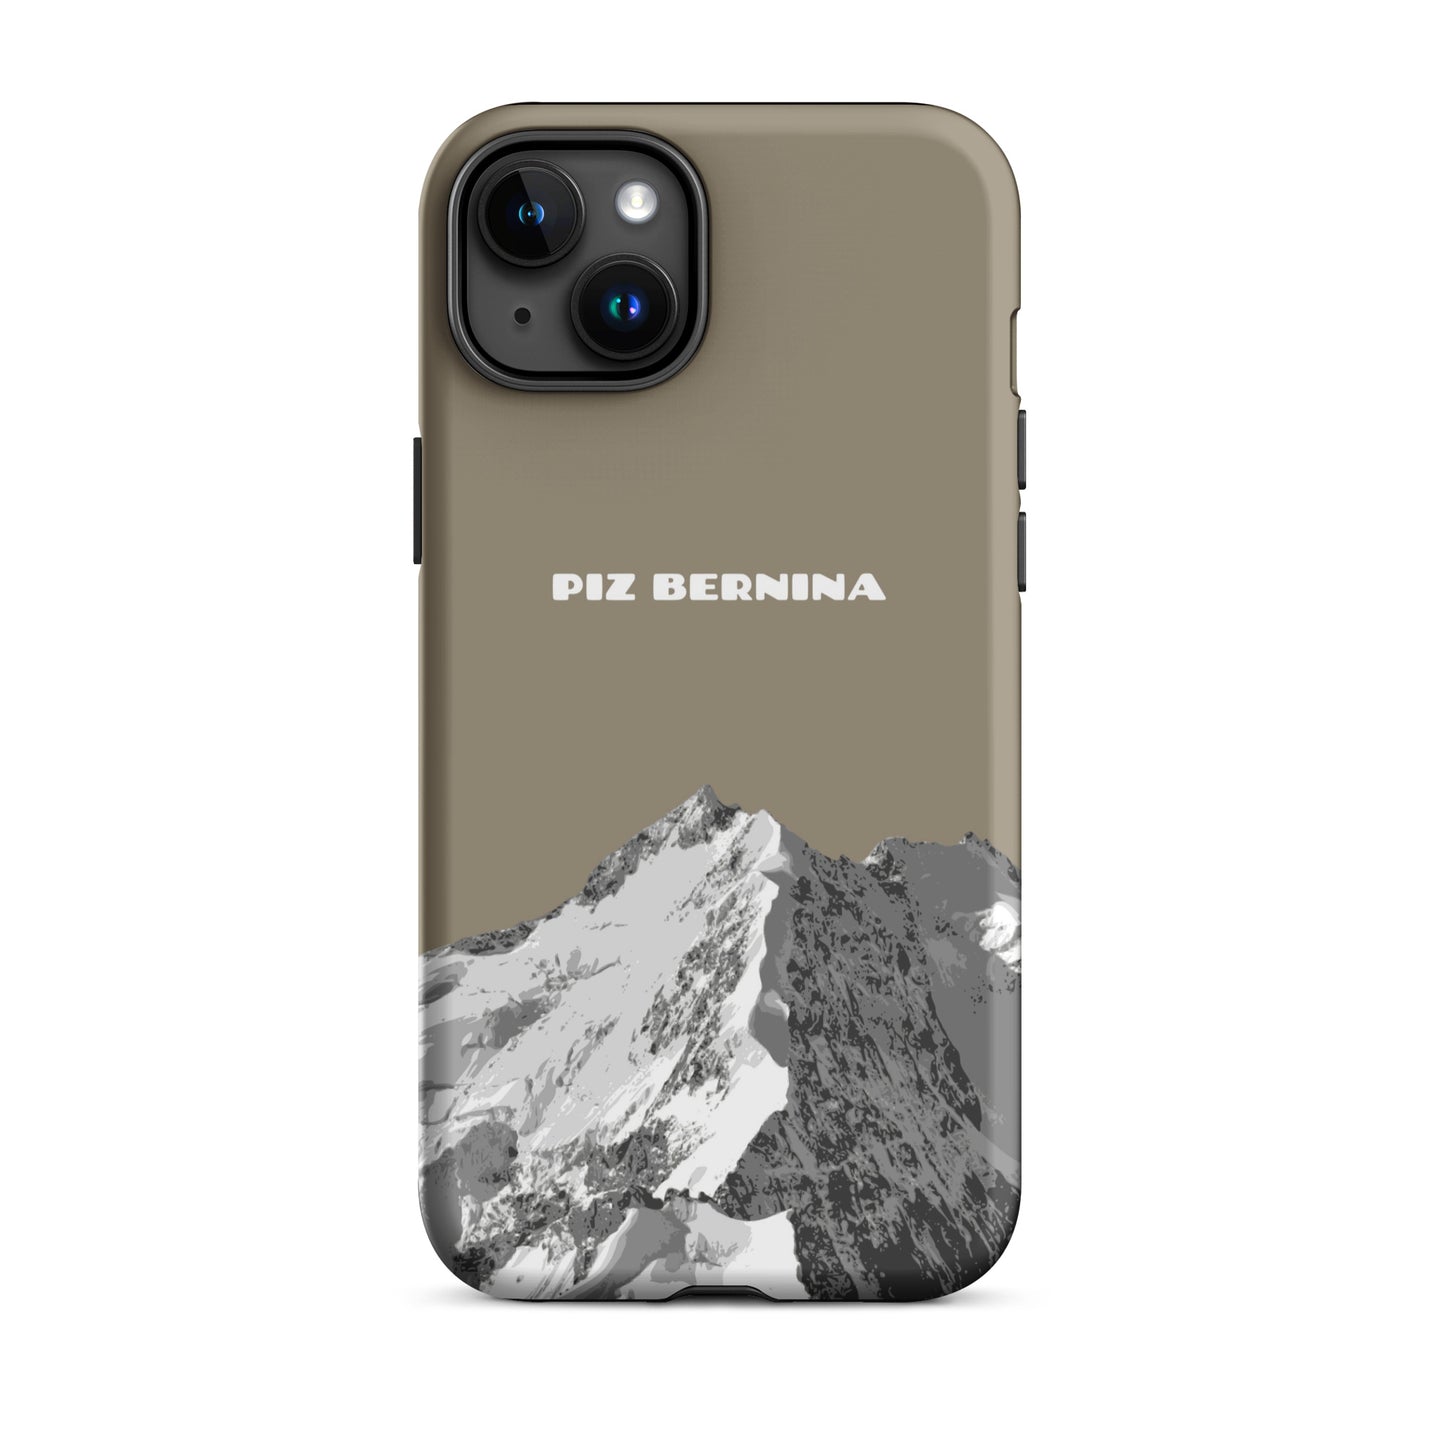 Hülle für das iPhone 15 Plus von Apple in der Farbe Graubraun, dass den Piz Bernina in Graubünden zeigt.